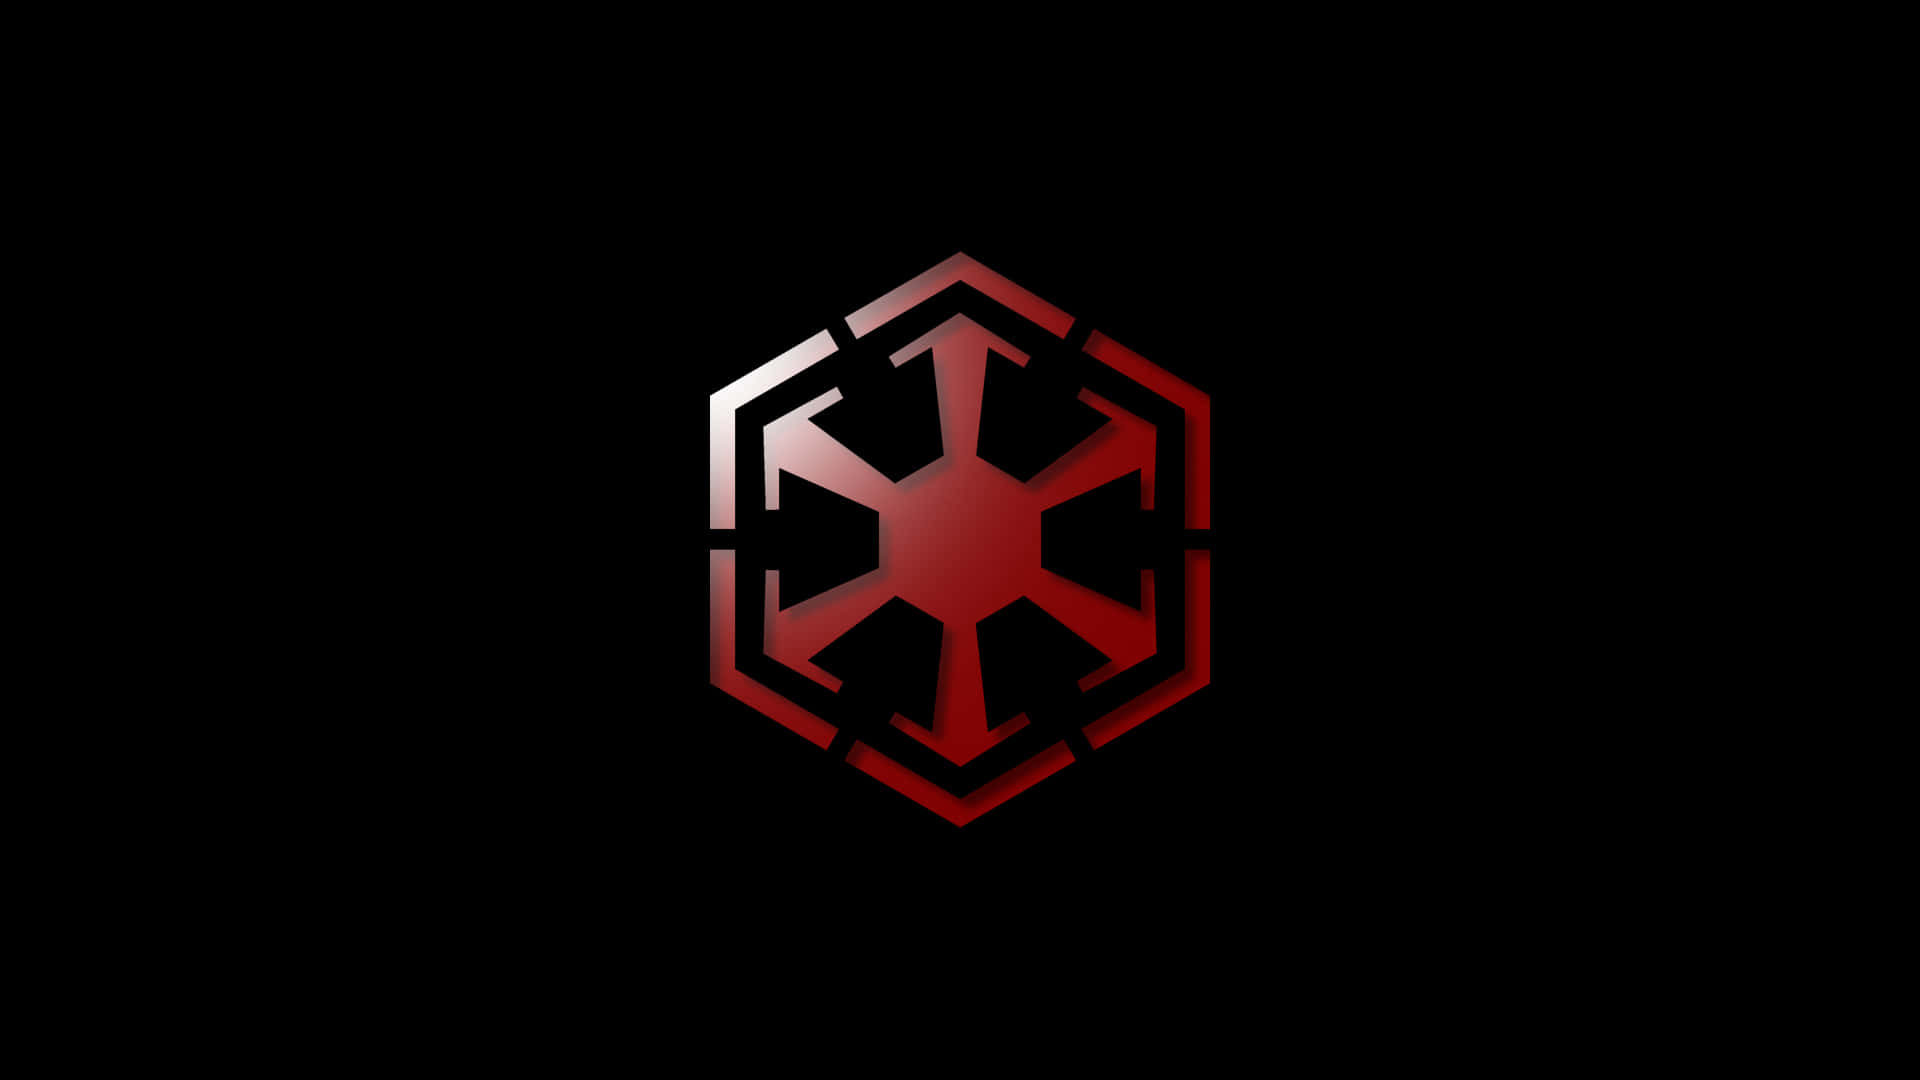 Star Wars Empire Logo Wallpaper Wallpapersafari. Download